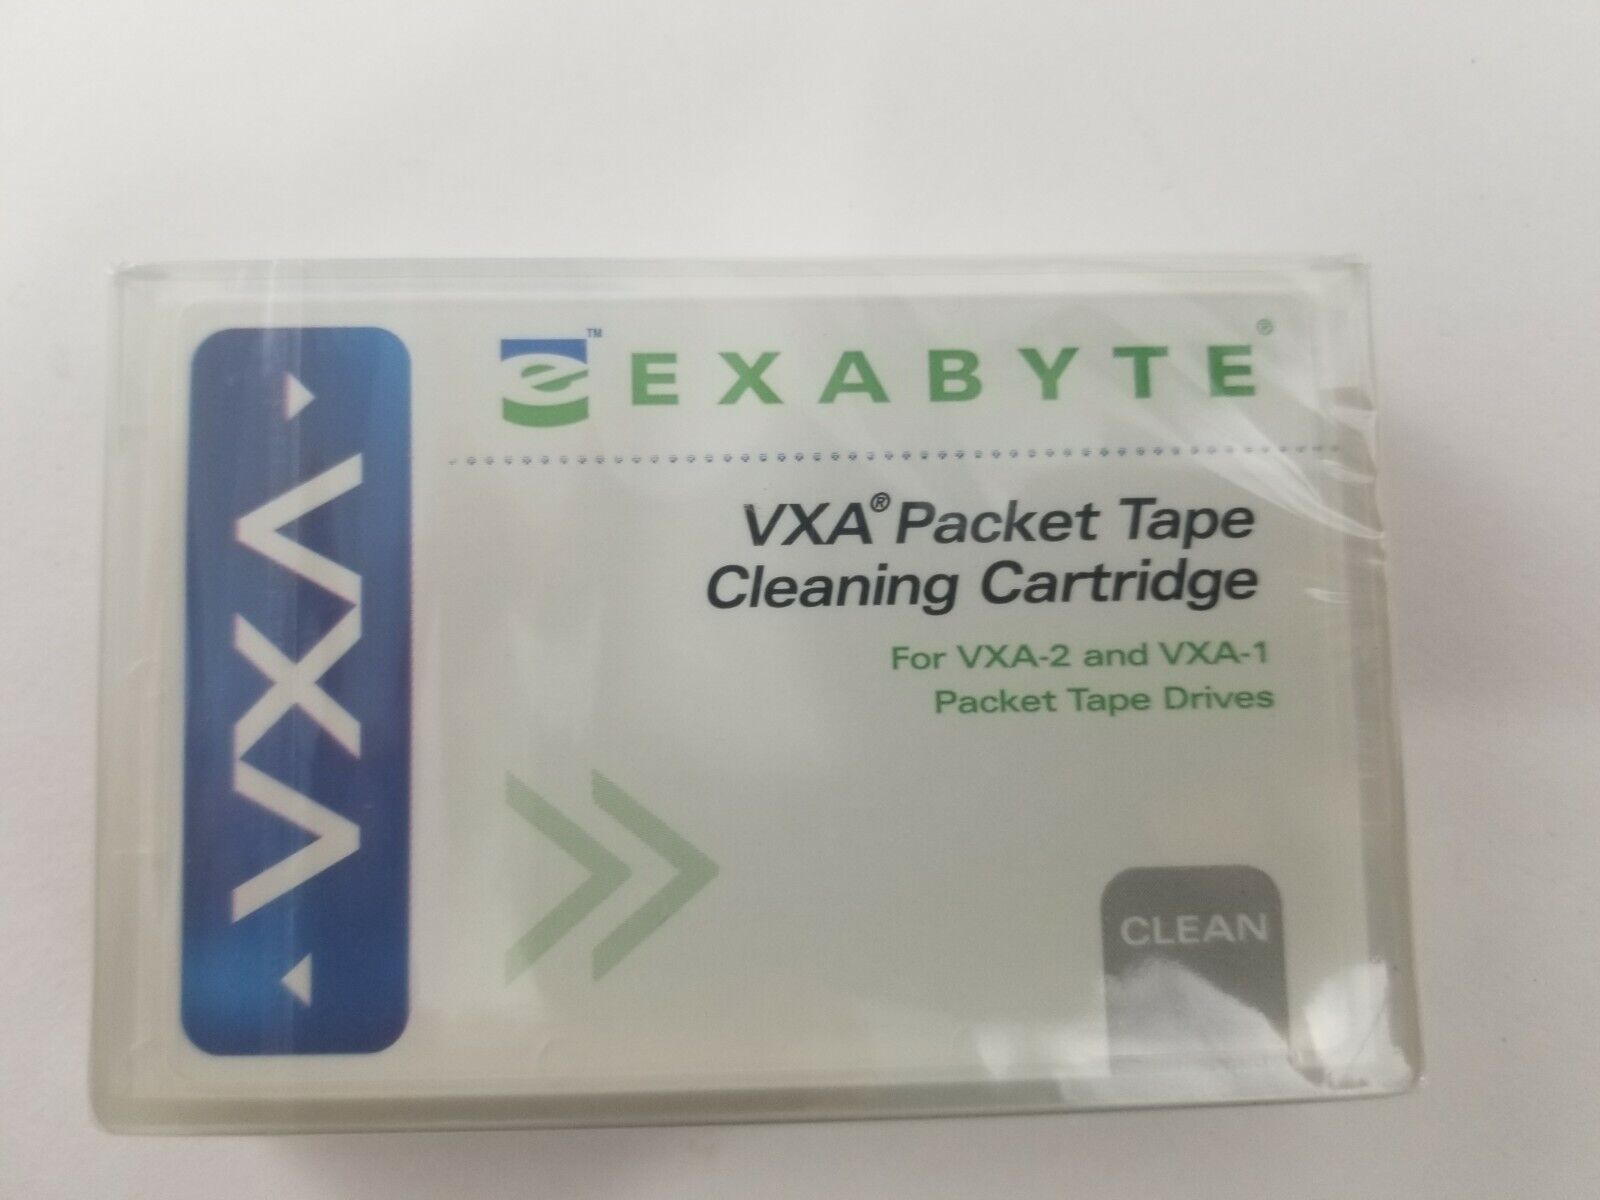 Exabyte VXA packet cleaning cartridge for VXA-2 and VXA-1. New sealed